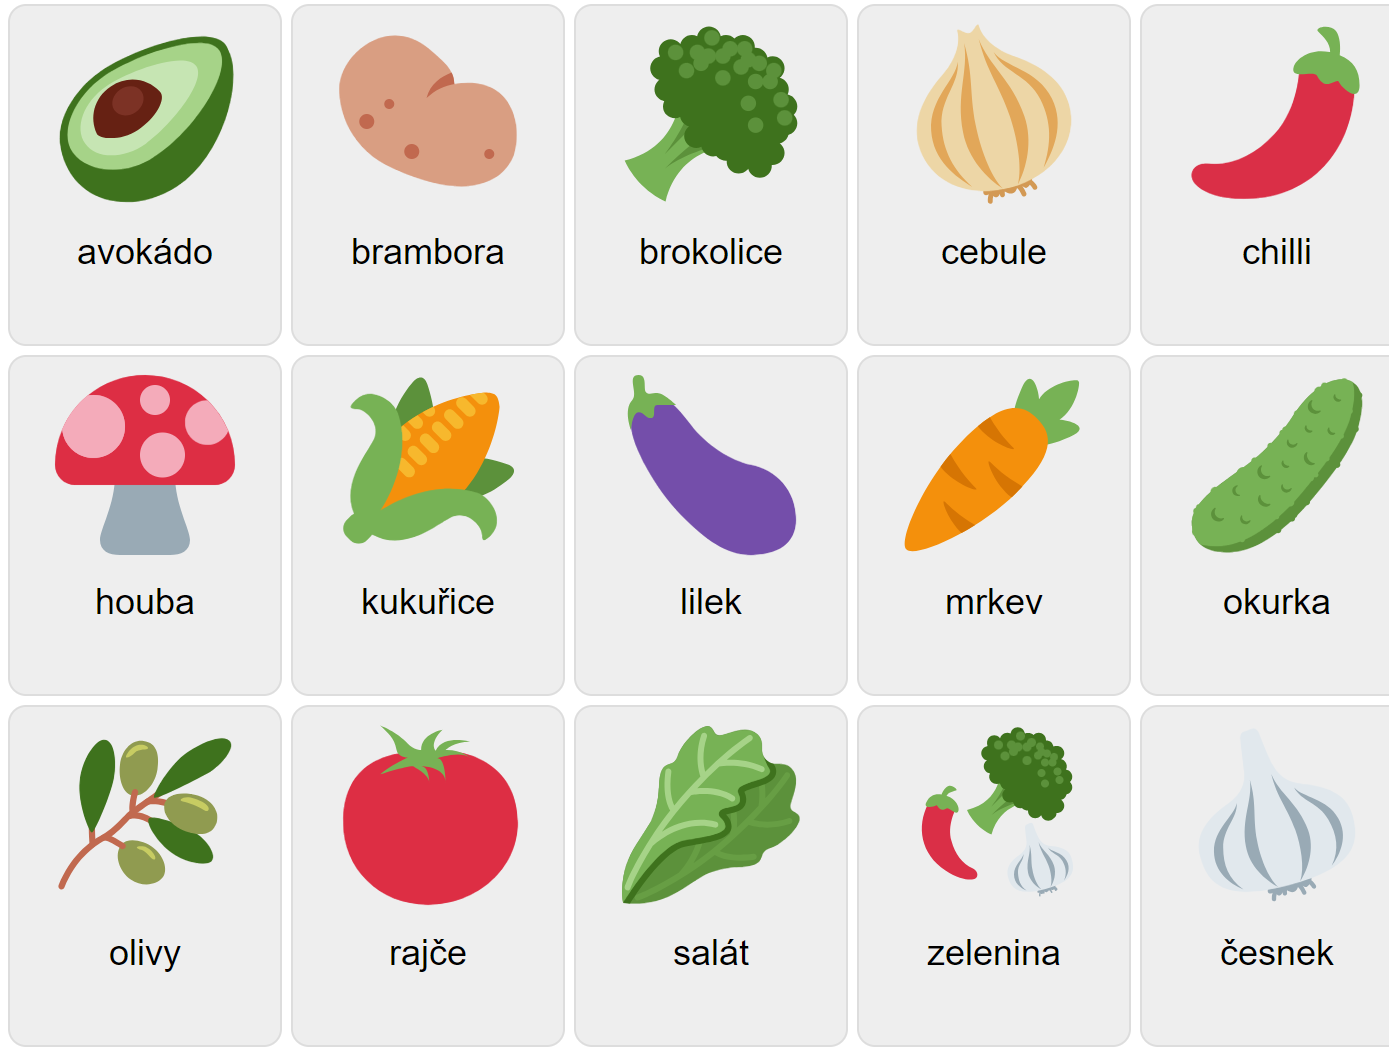 Verduras en checo